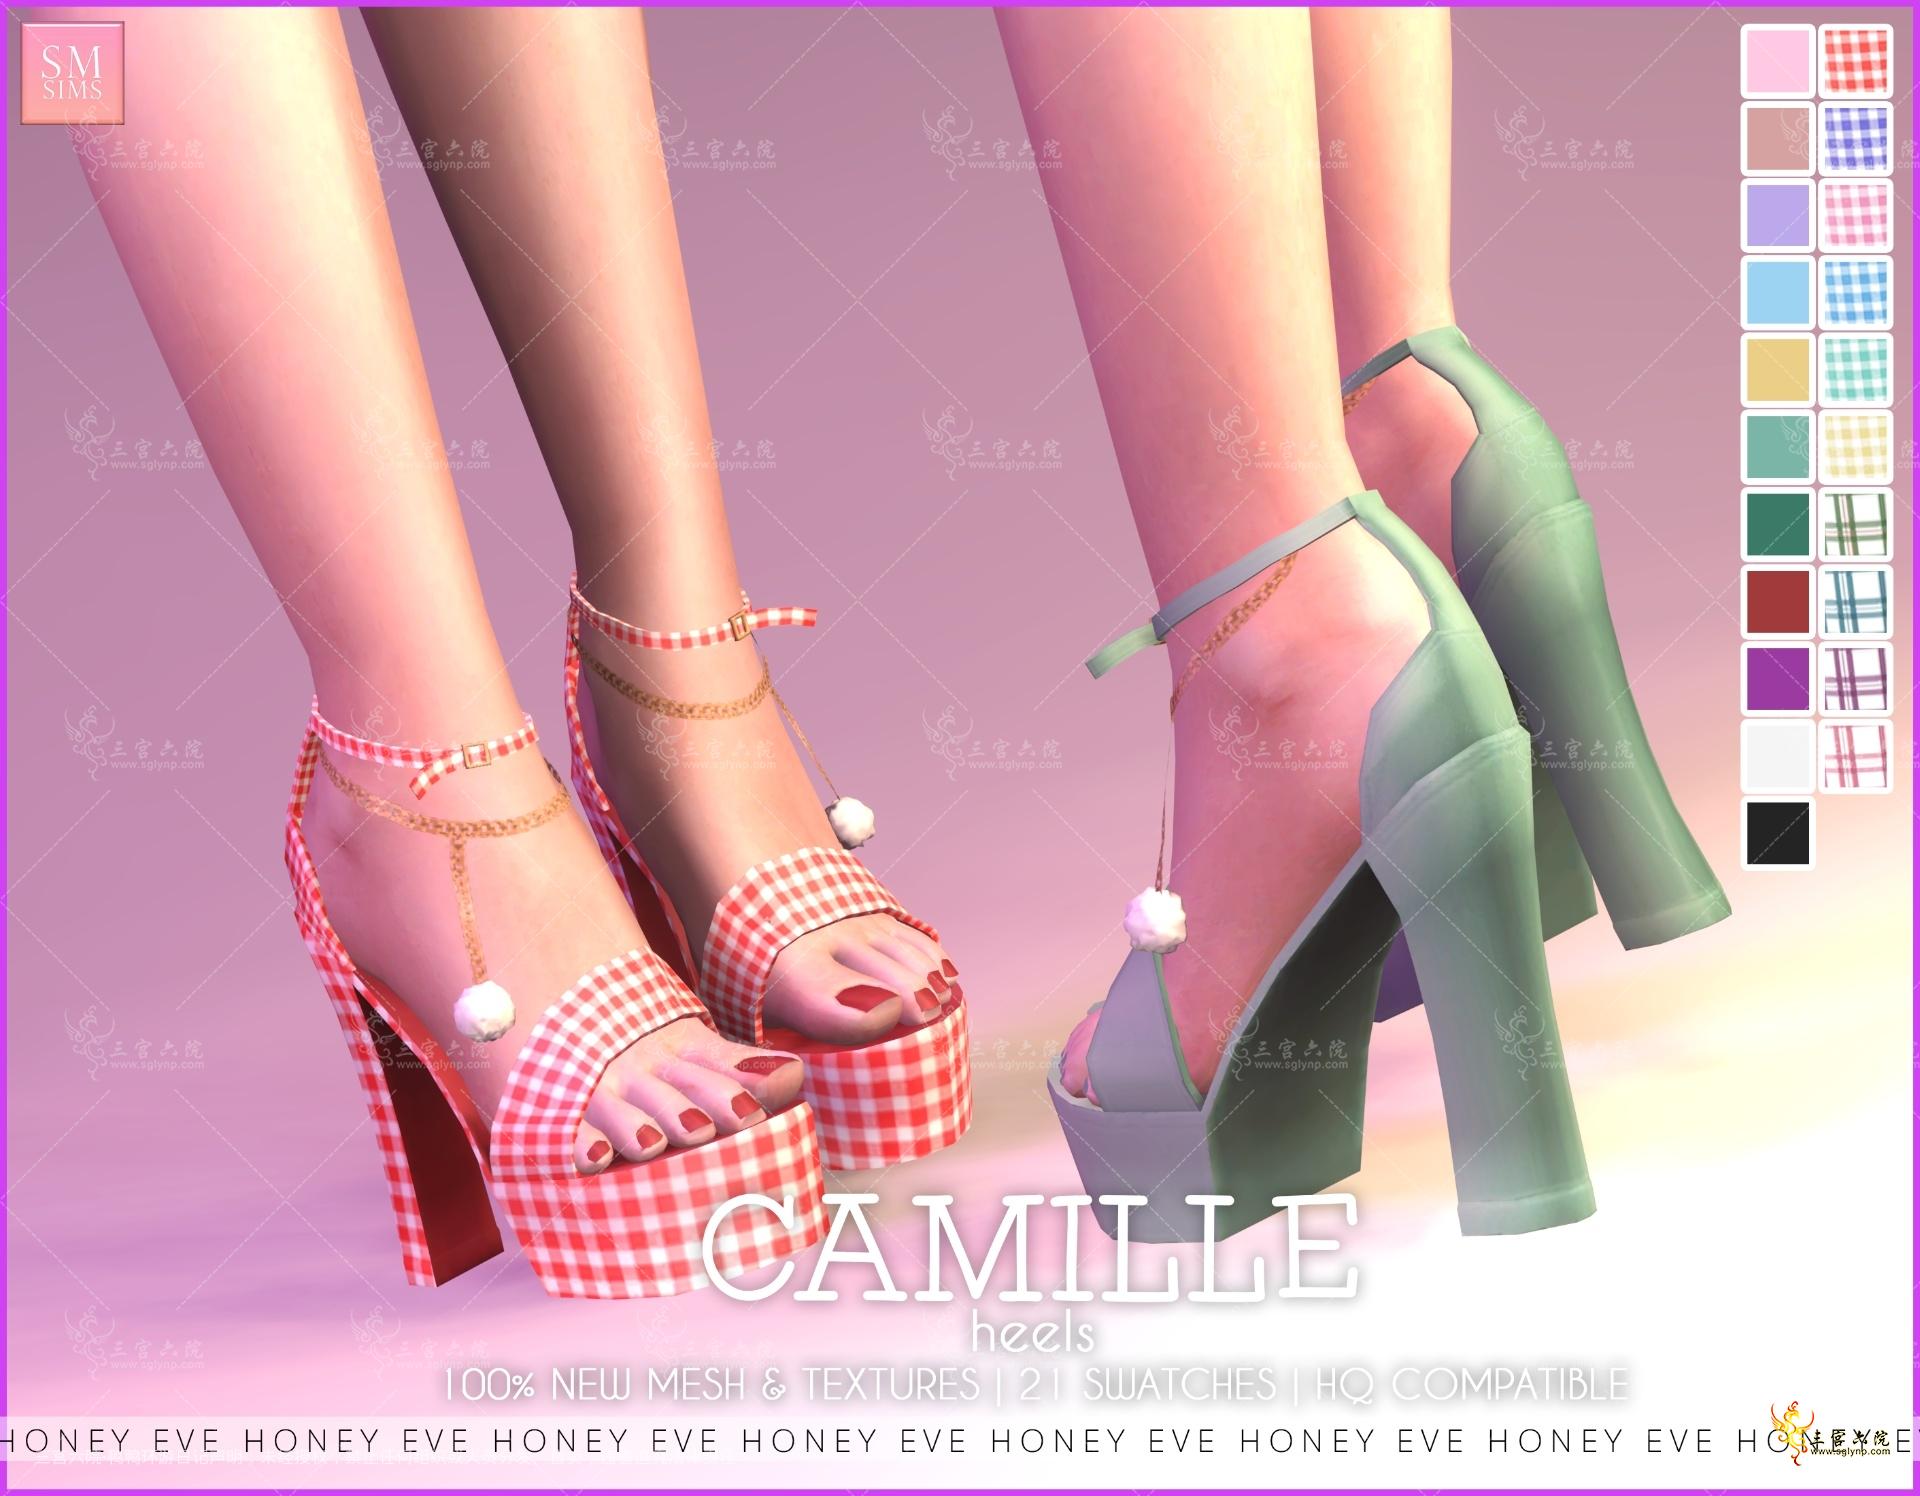 MYOBI-camille-heels.png